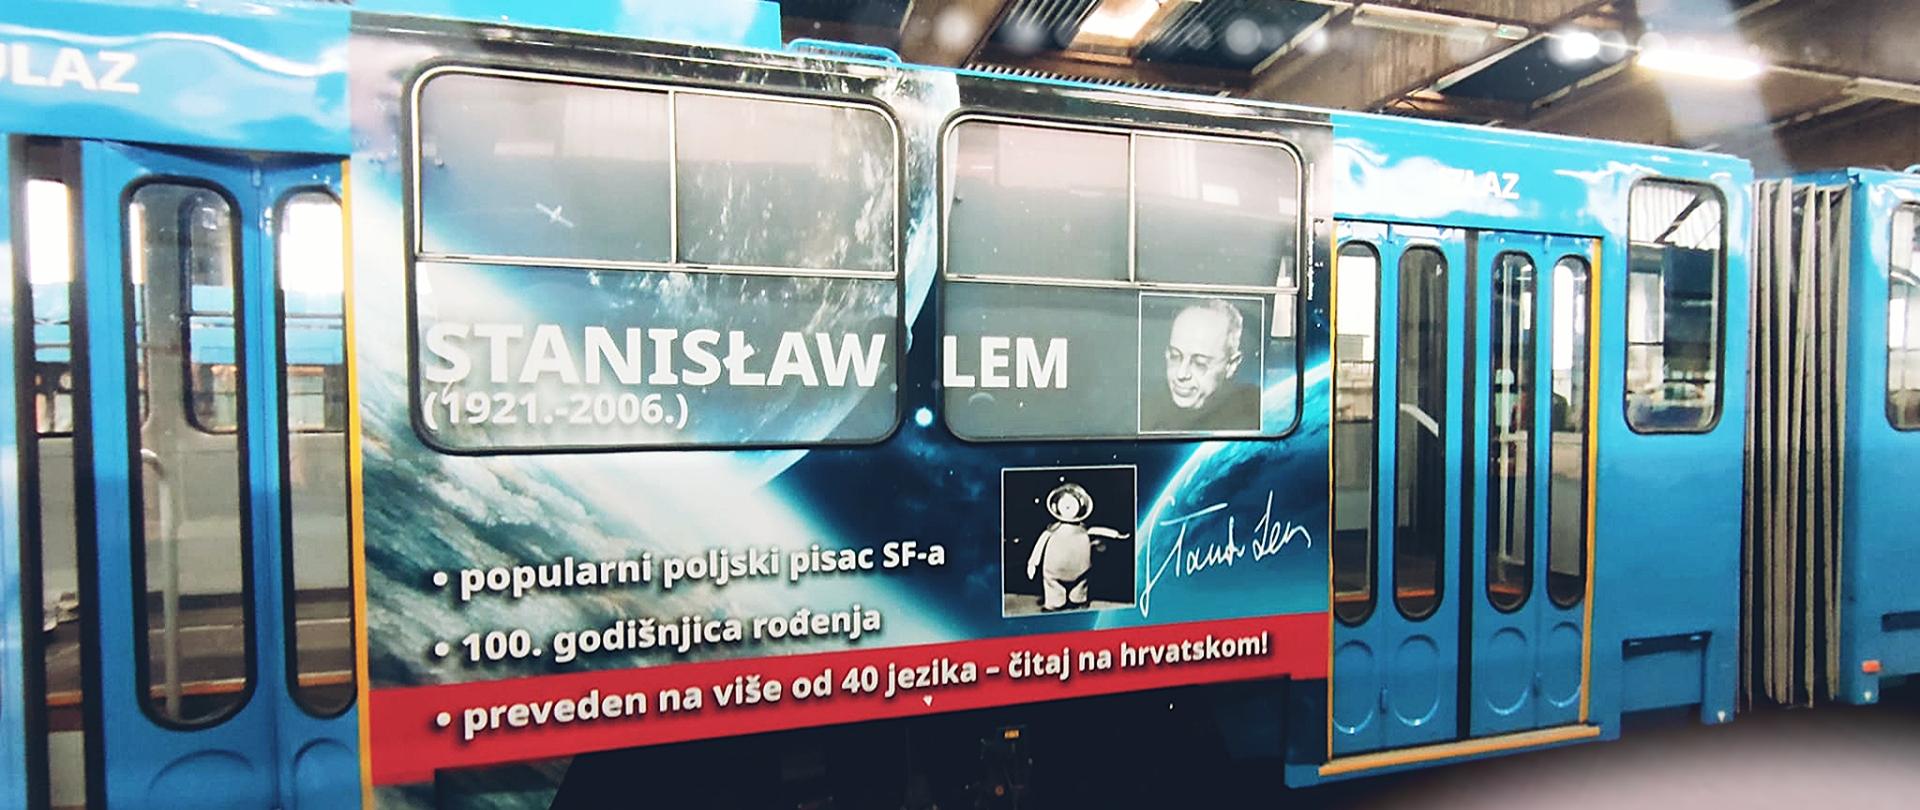 Zagrebački tramvaj s likom Stanisława Lema